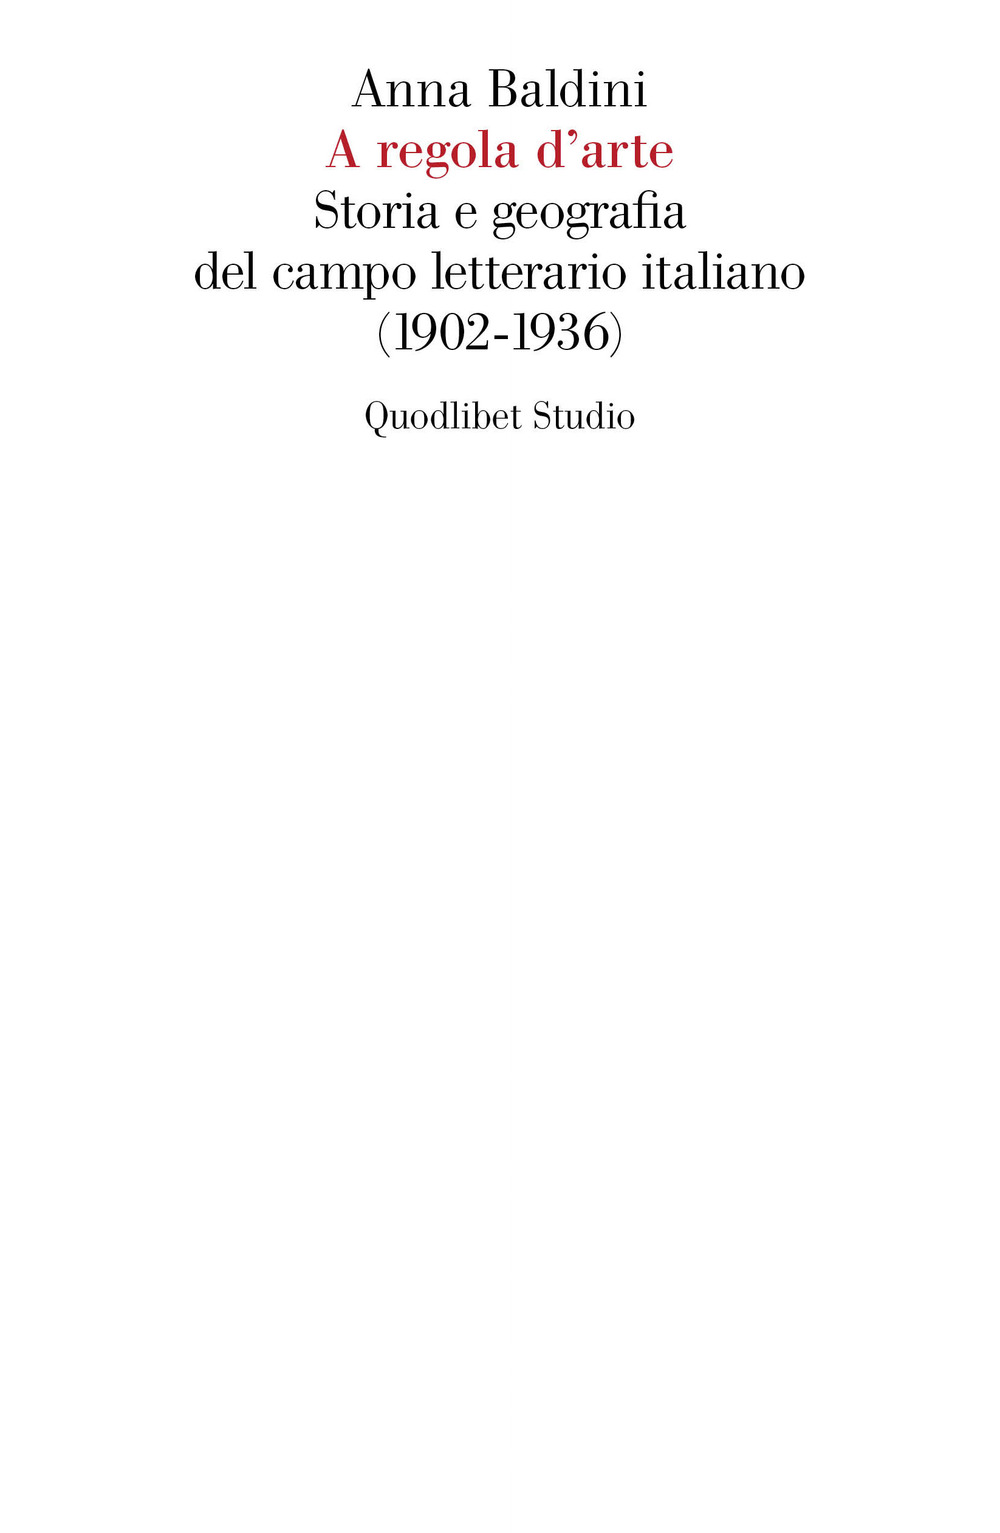 A REGOLA D'ARTE. STORIA E GEOGRAFIA DEL CAMPO LETTERARIO ITALIANO (1902-1936)